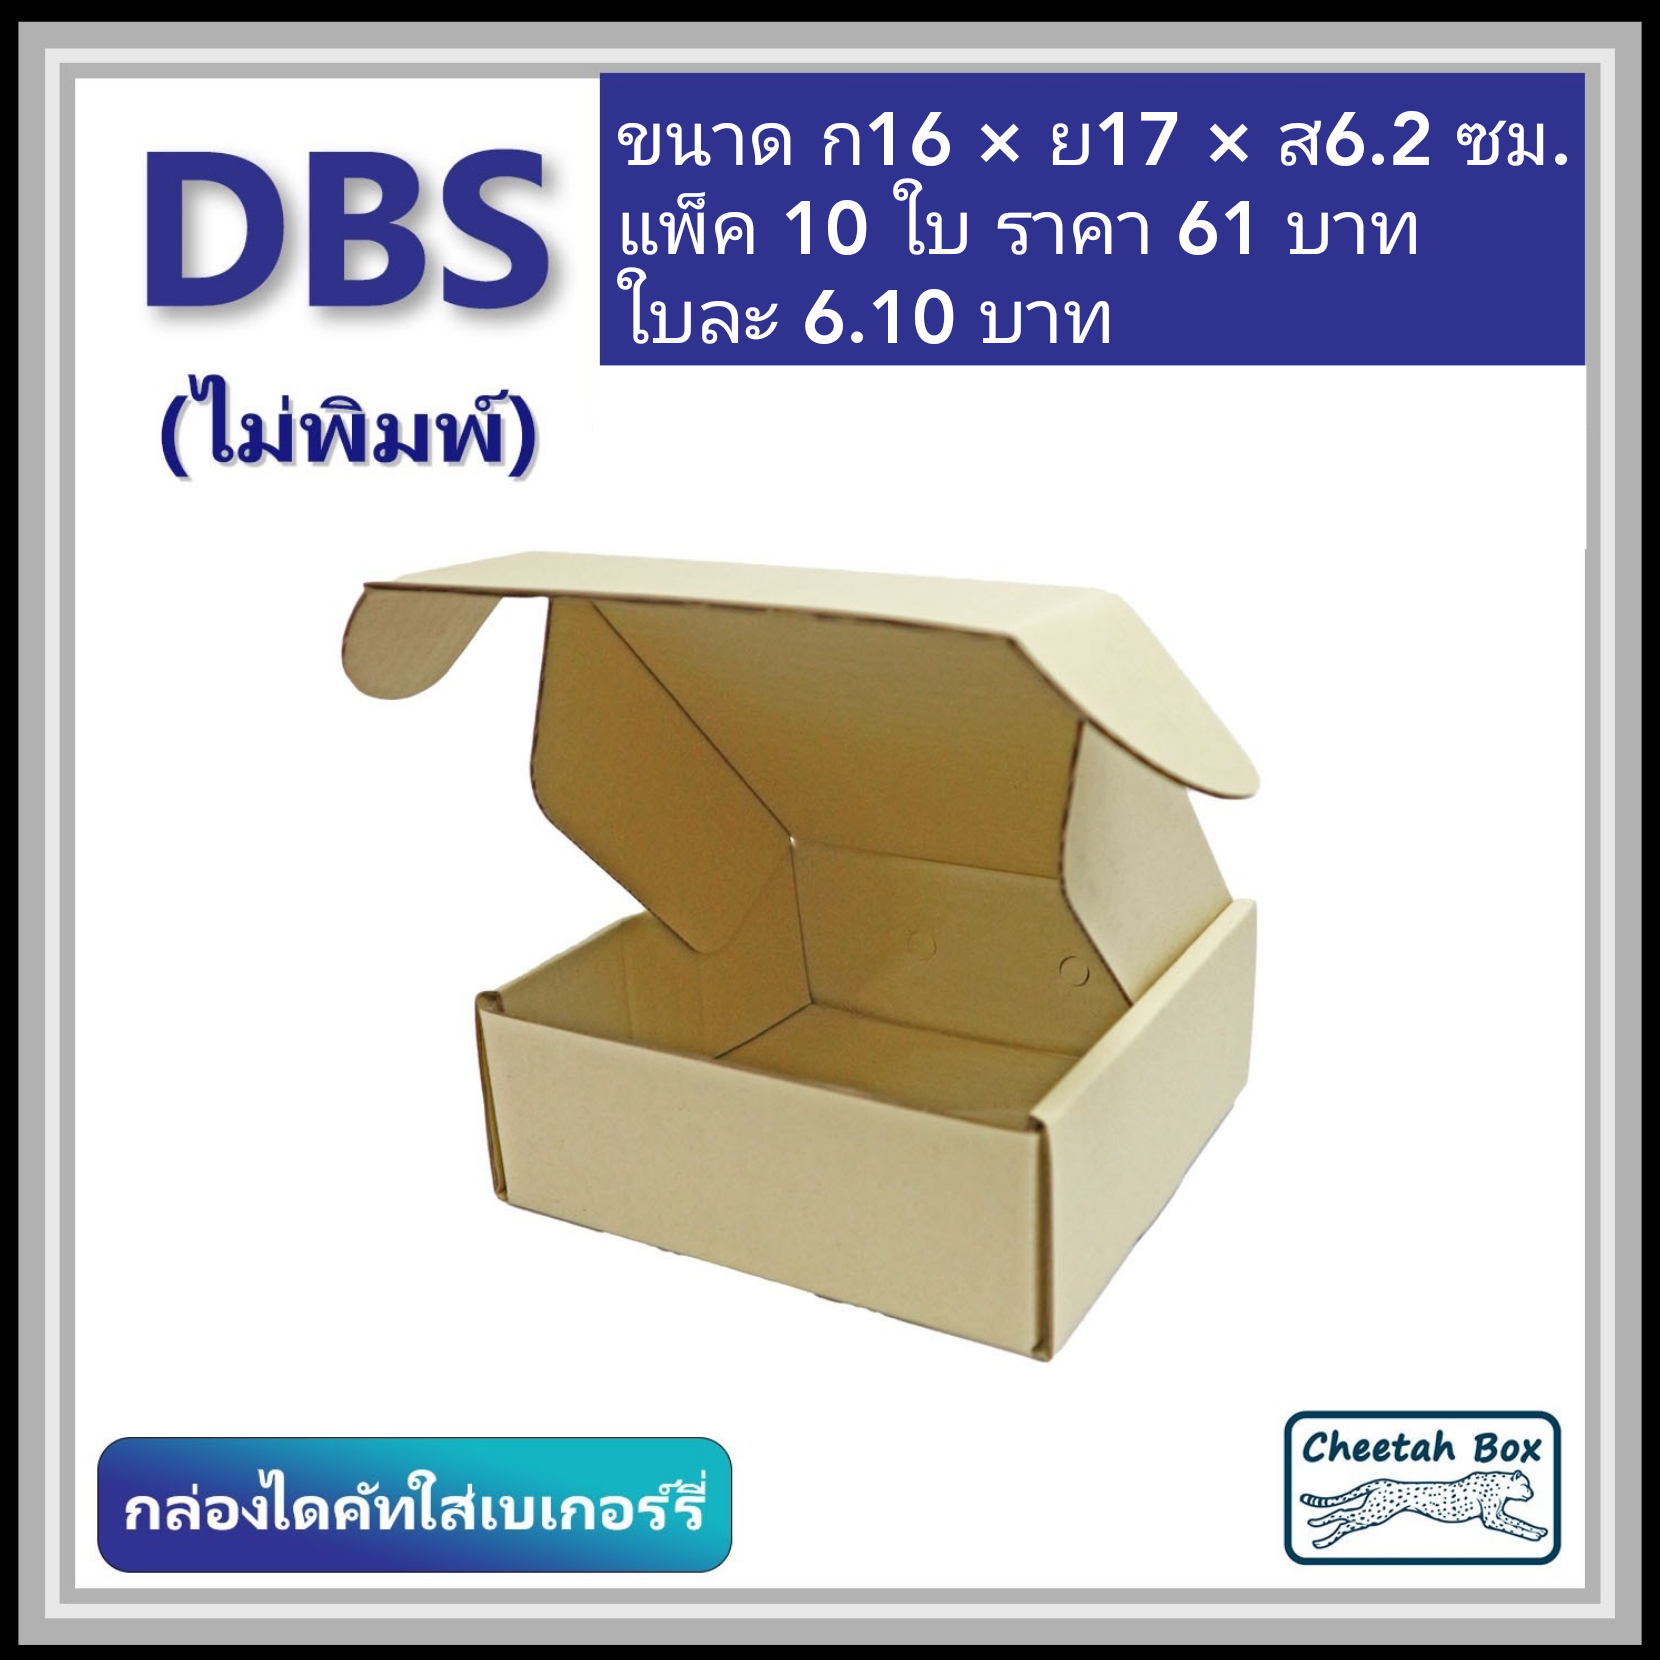 กล่องไดคัทหูช้าง เบเกอรี่เล็ก รหัส DBS ไม่พิมพ์ (Cheetah Box) 16W x 17L x 6.2H cm.